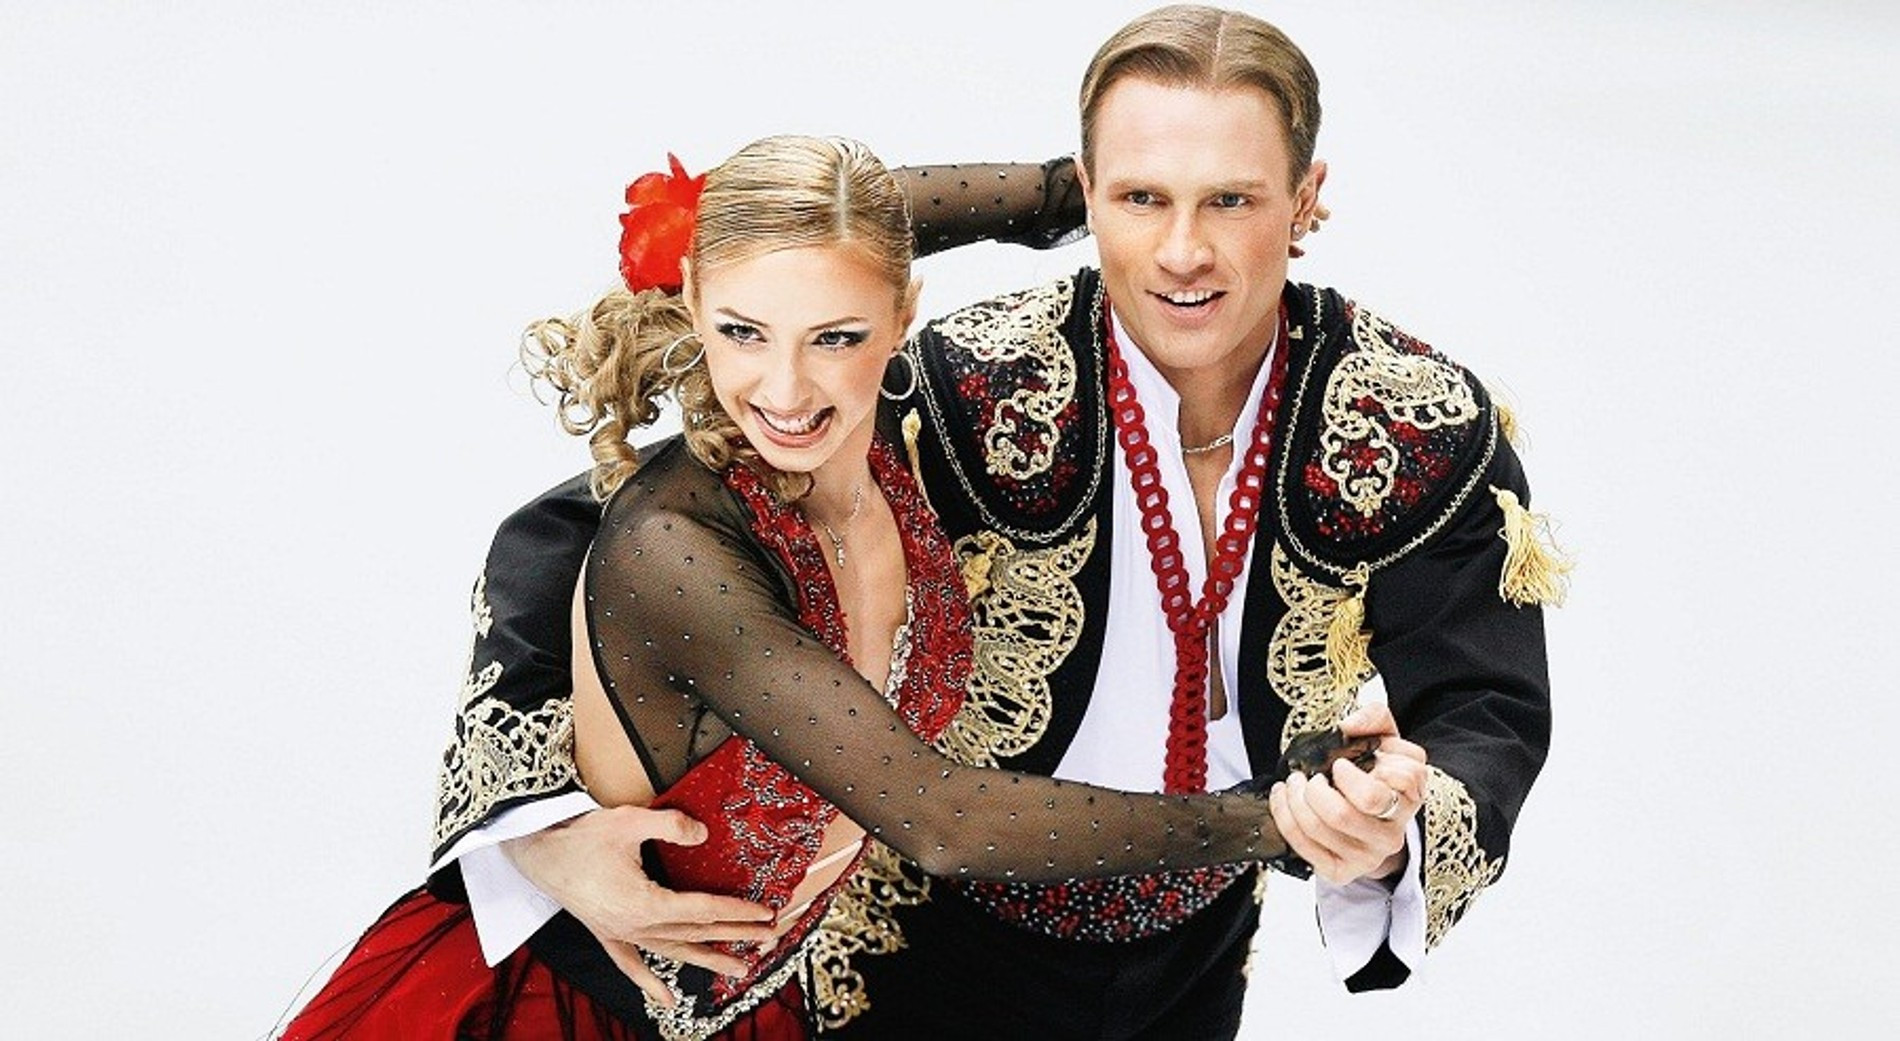 Роман Костомаров и Татьяна Навка на льду
Фото: Getty Images